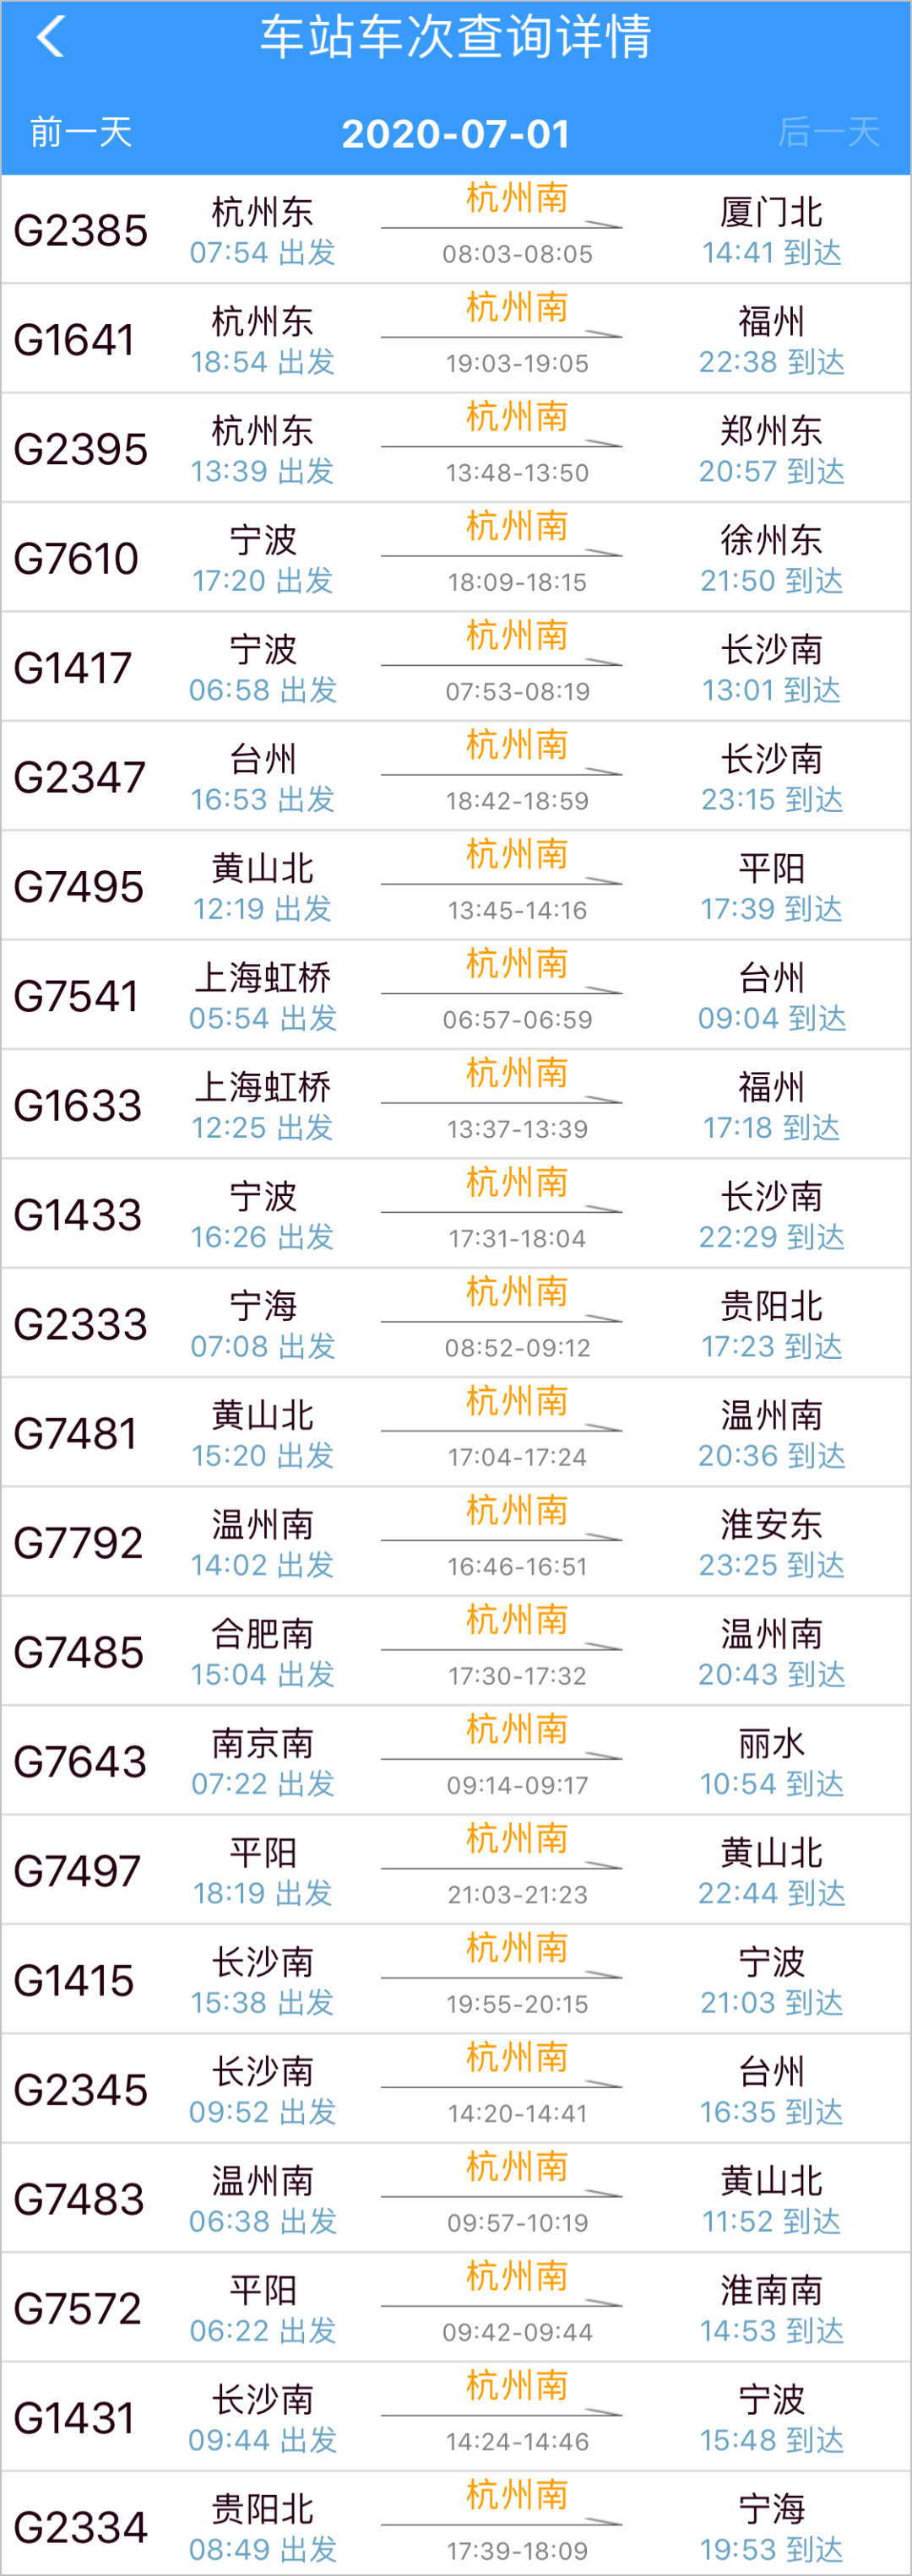 同时,上海到杭州南站的火车票也已经可以购买